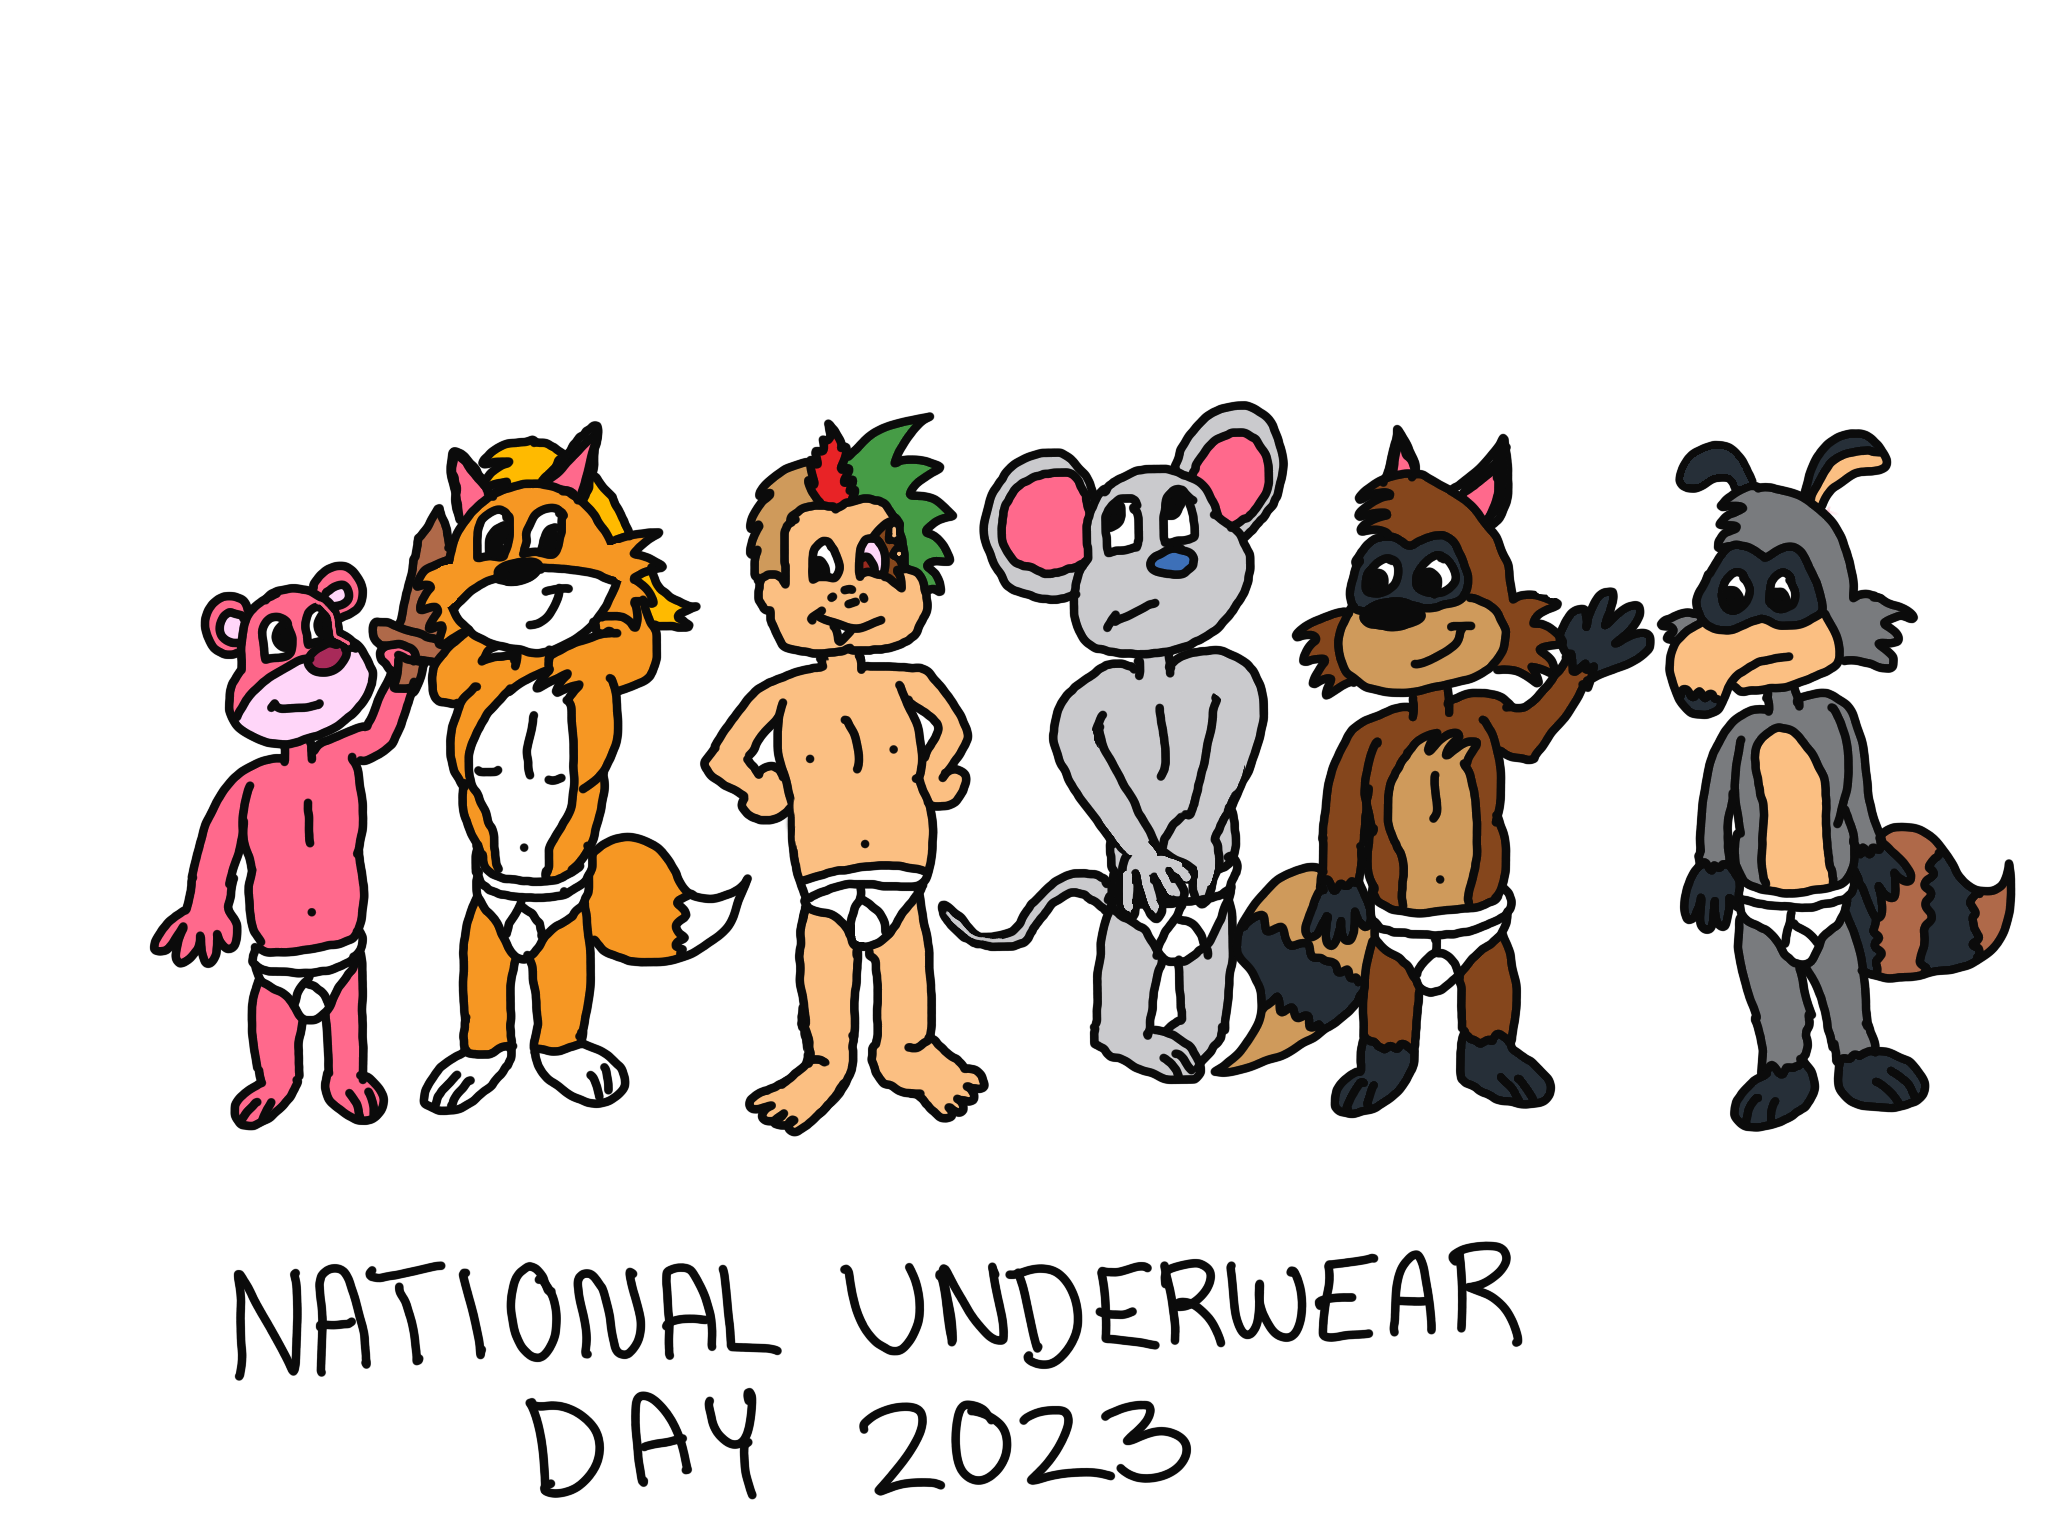 National Underwear Day 2023 by AgentZero1982 on DeviantArt